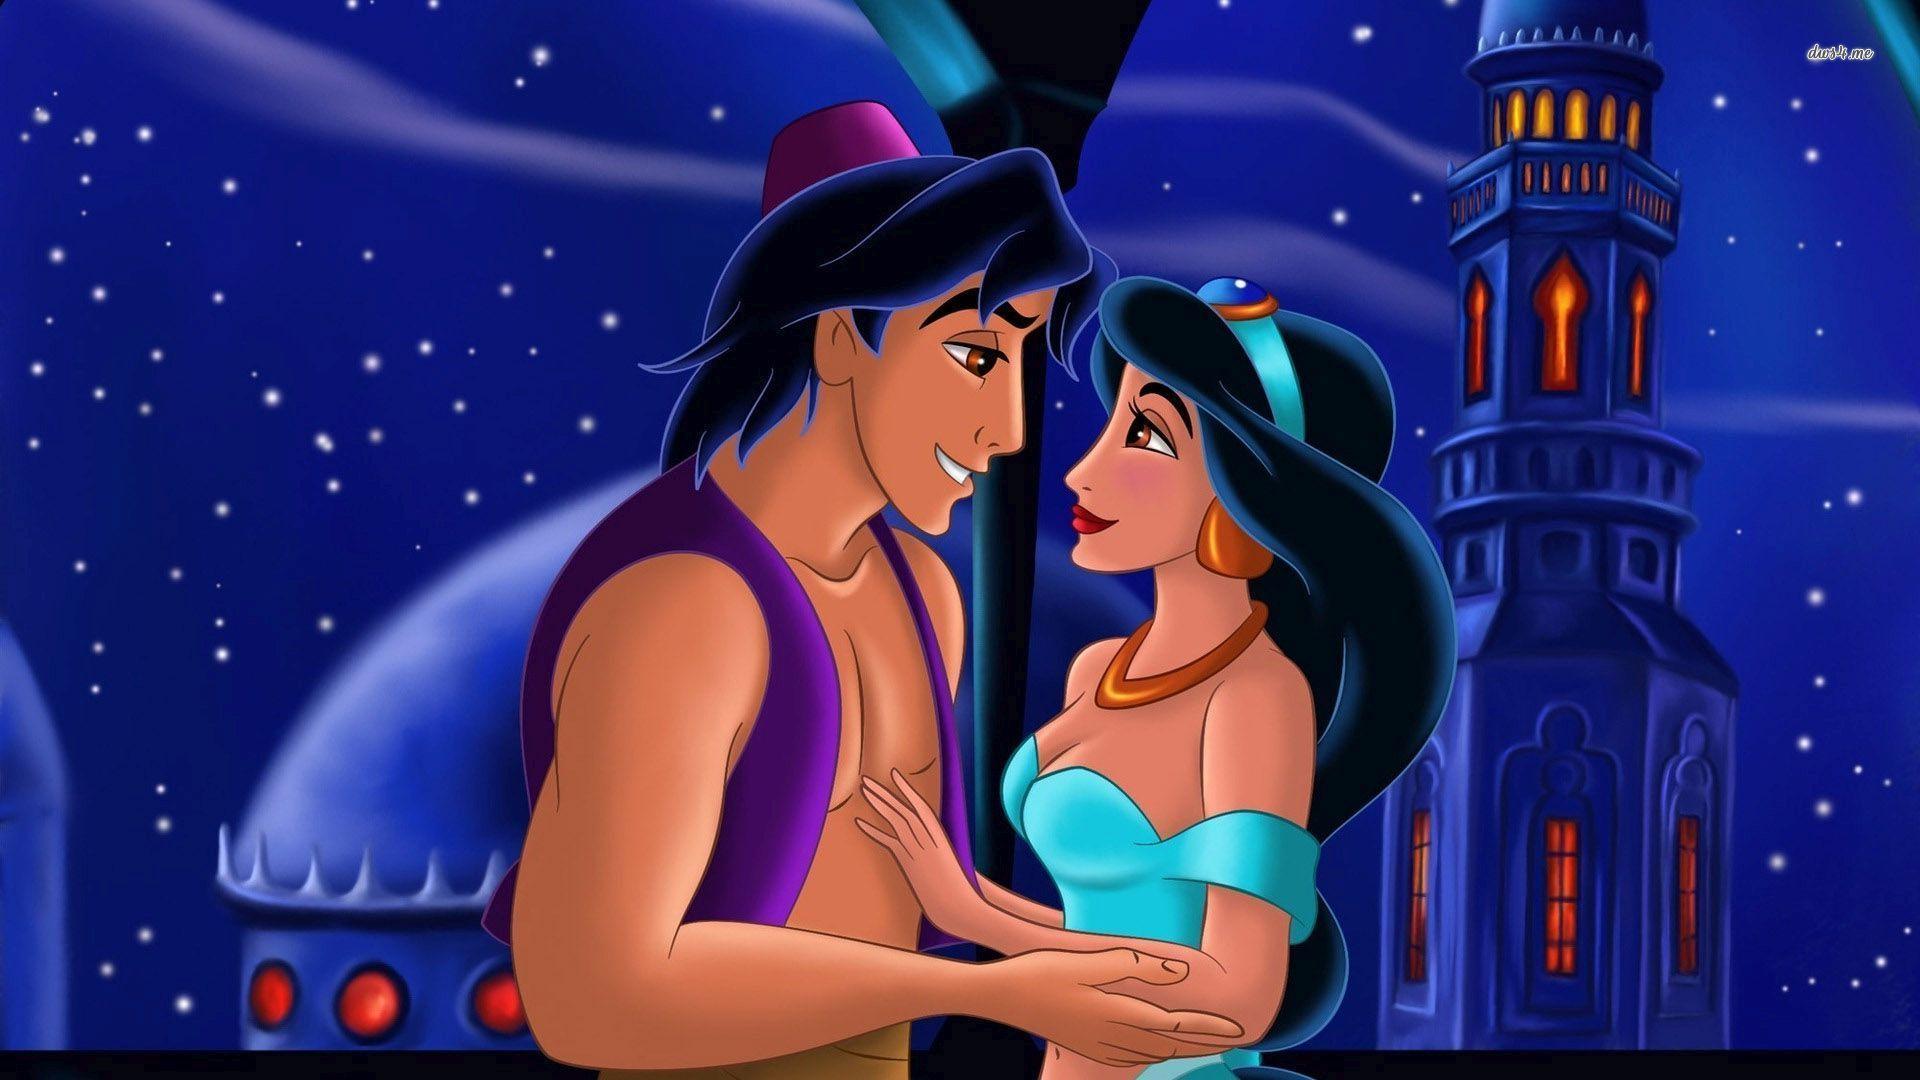 Aladdin And Jasmine wallpaper. Princess jasmine